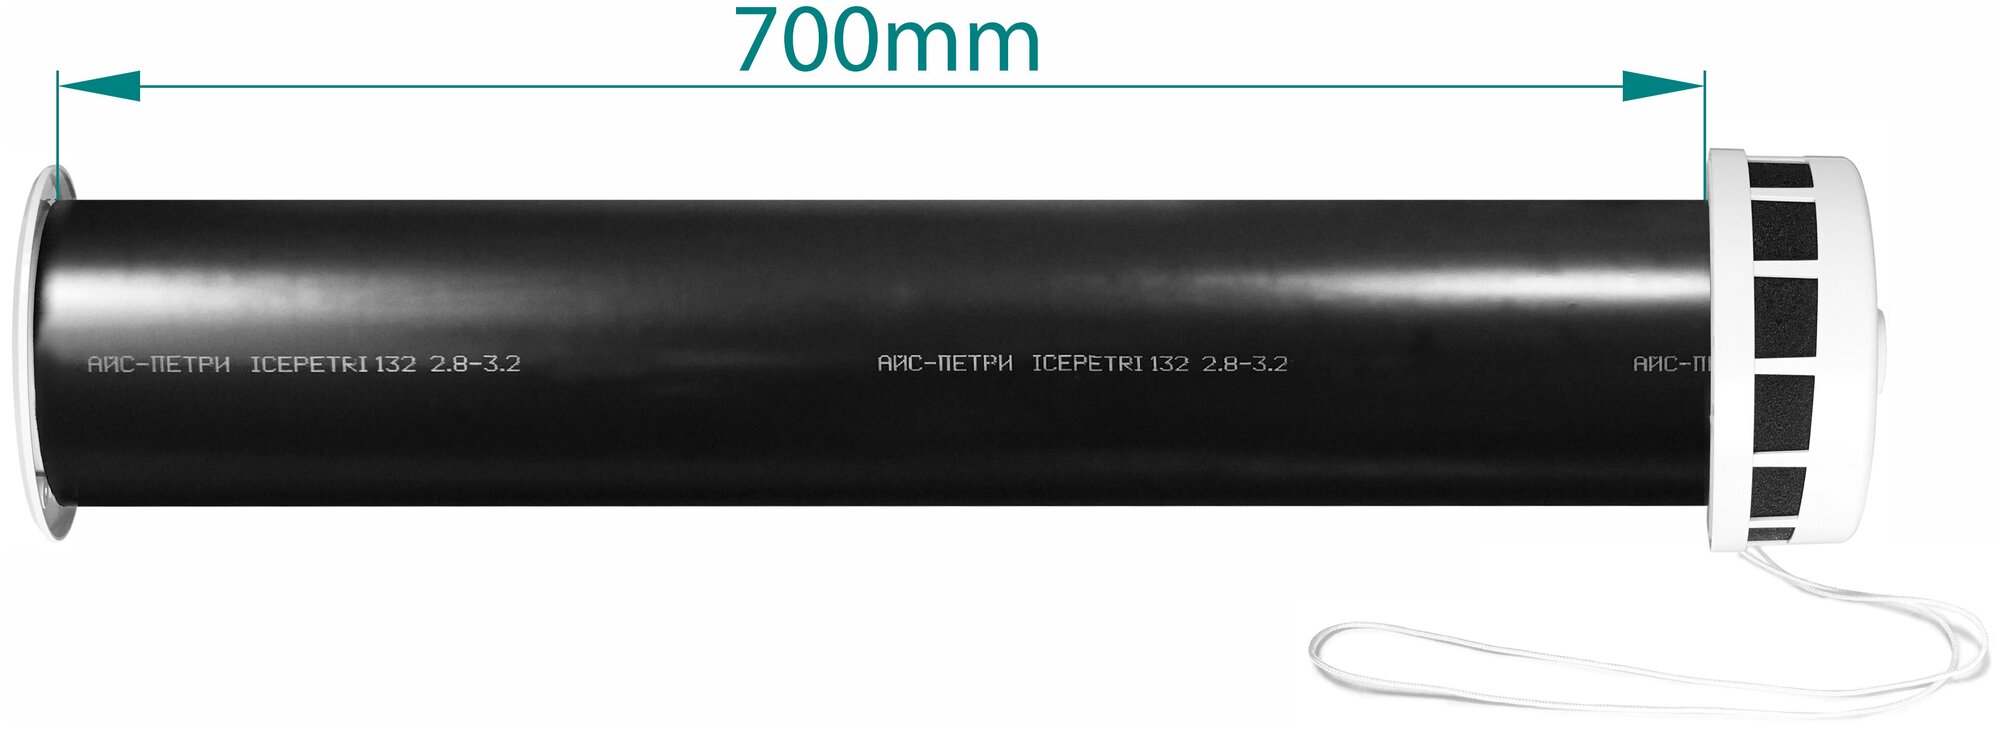 Приточный клапан КИВ-125 icepetri 700мм с ППУ и серой ASA-пластиковой решеткой - фотография № 2